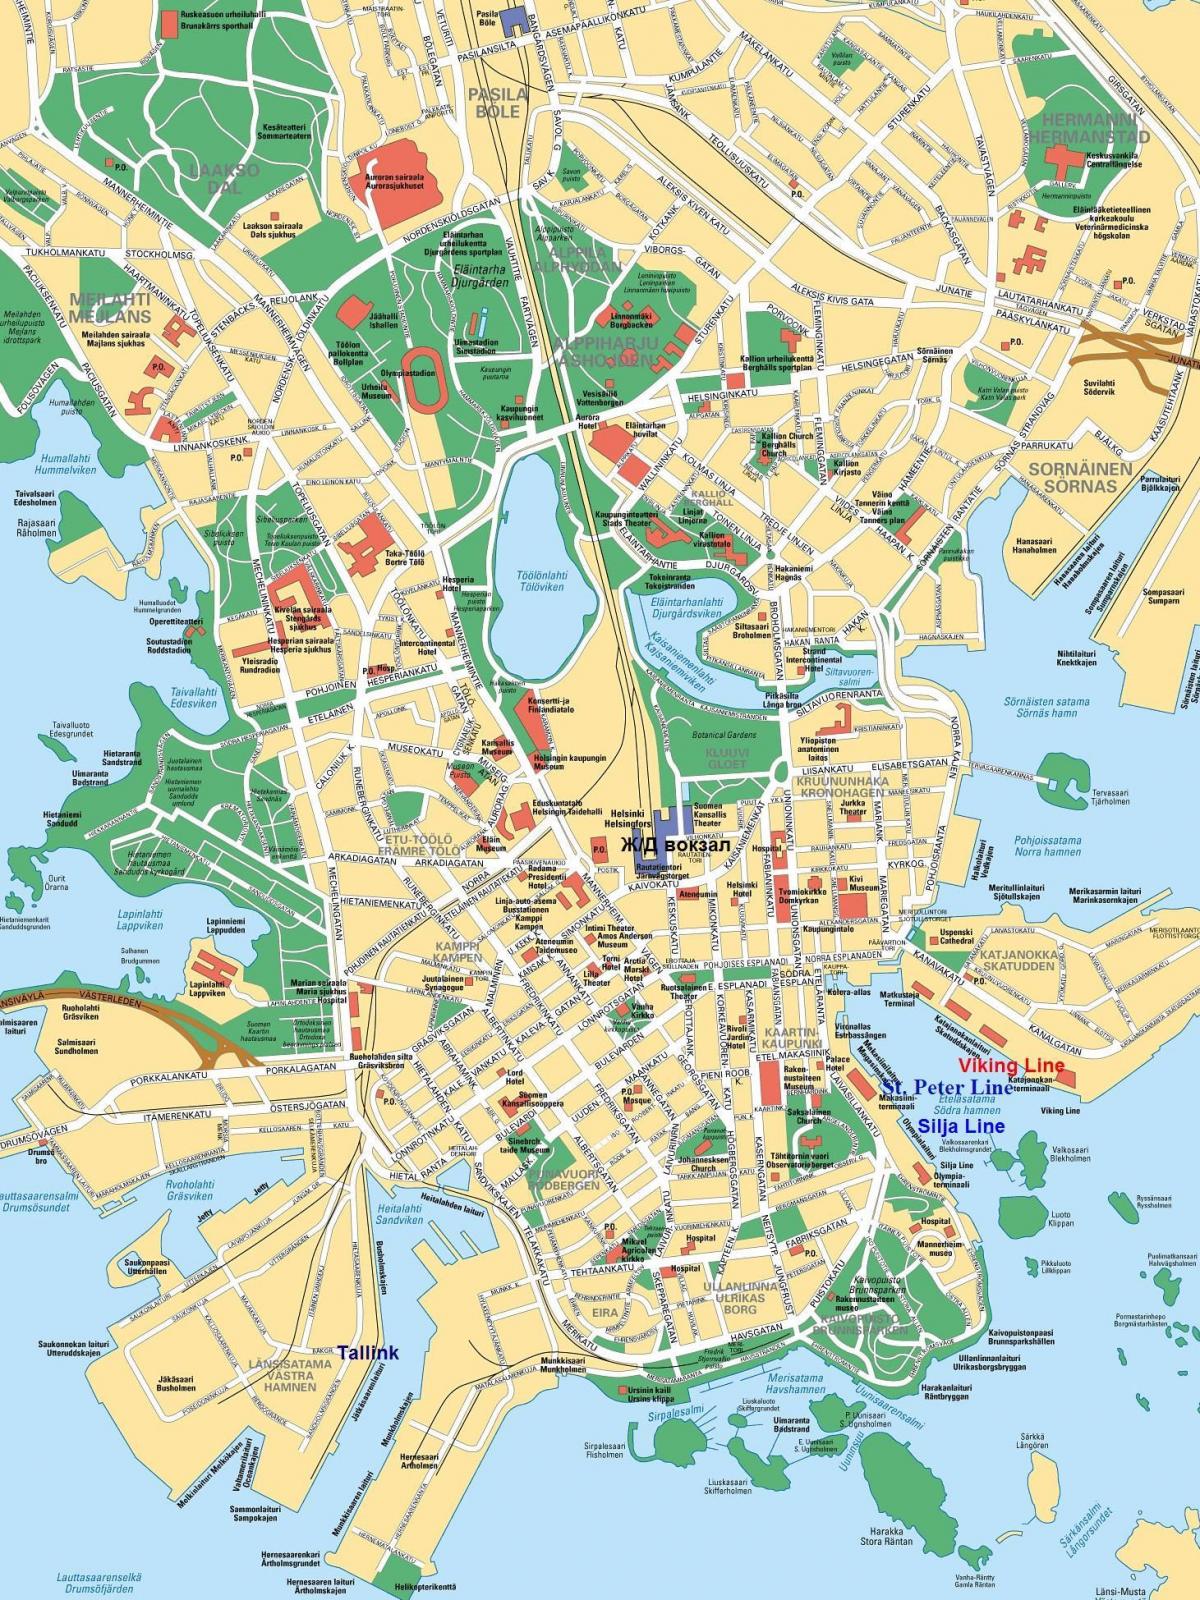 Plan de la ville de Helsinki